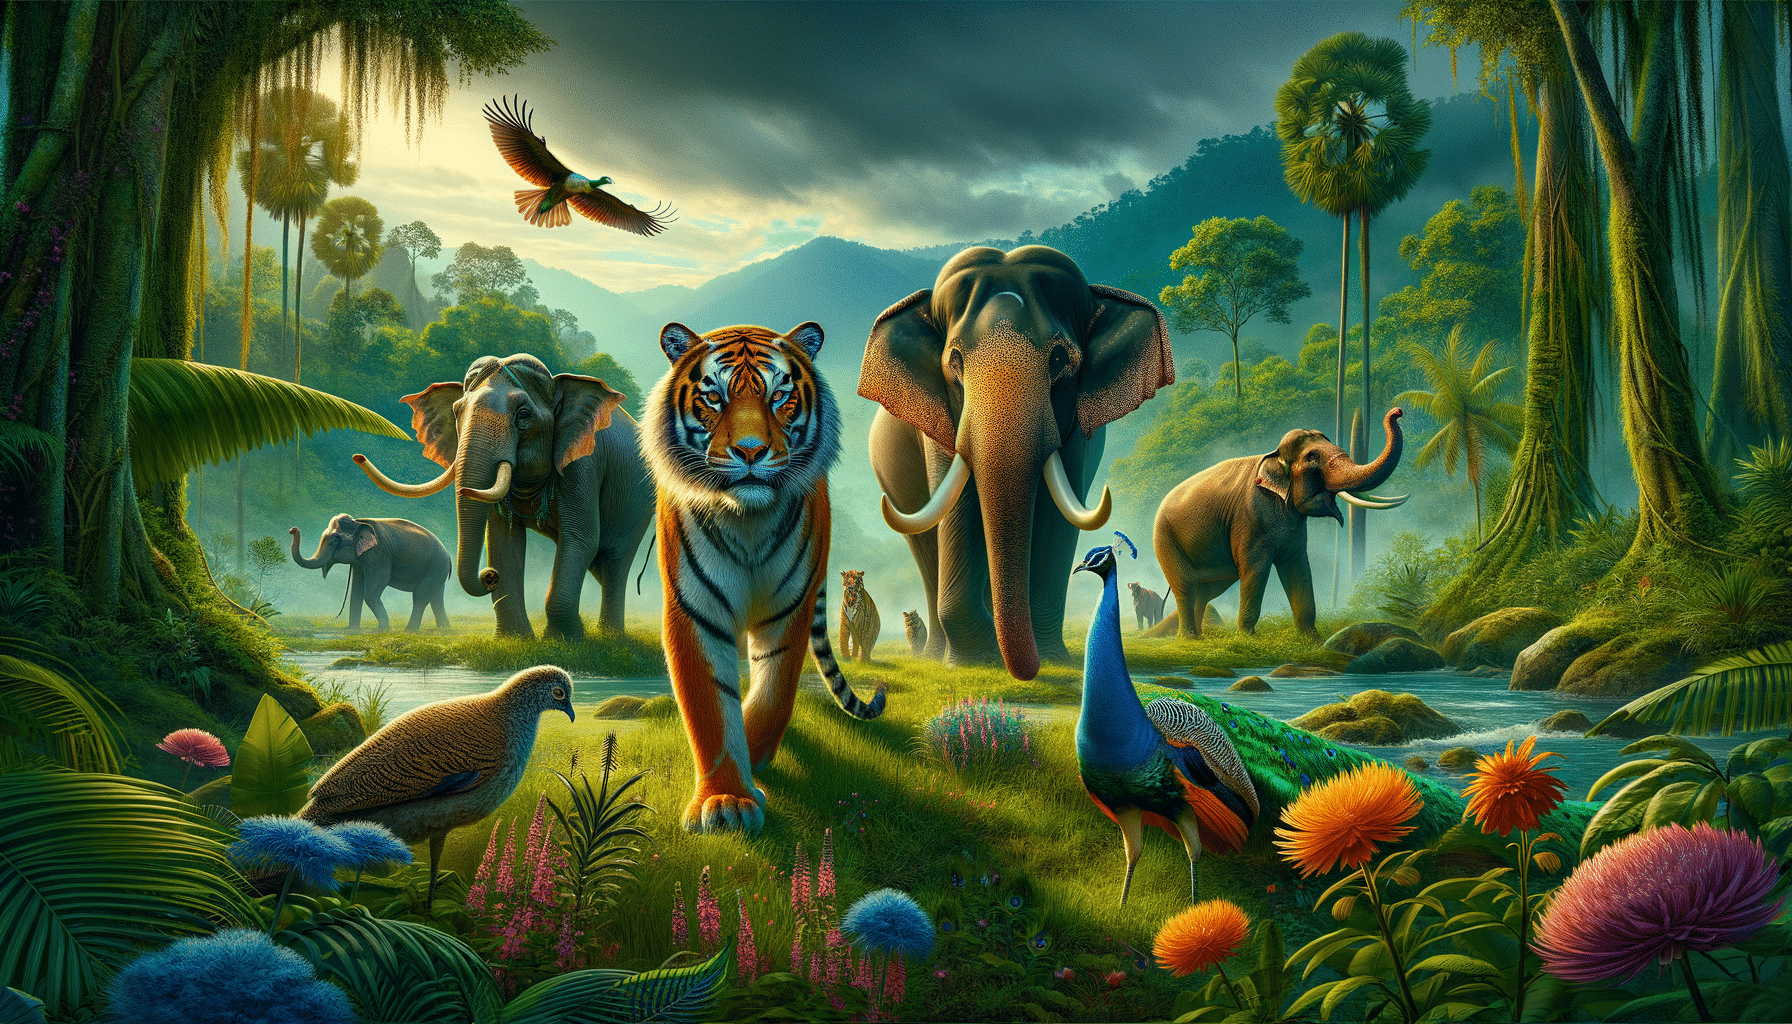 découvrez les secrets de la série destination wild s01, qui dévoile la vie des rois de la jungle en inde. plongez dans un univers sauvage captivant et surprenant !